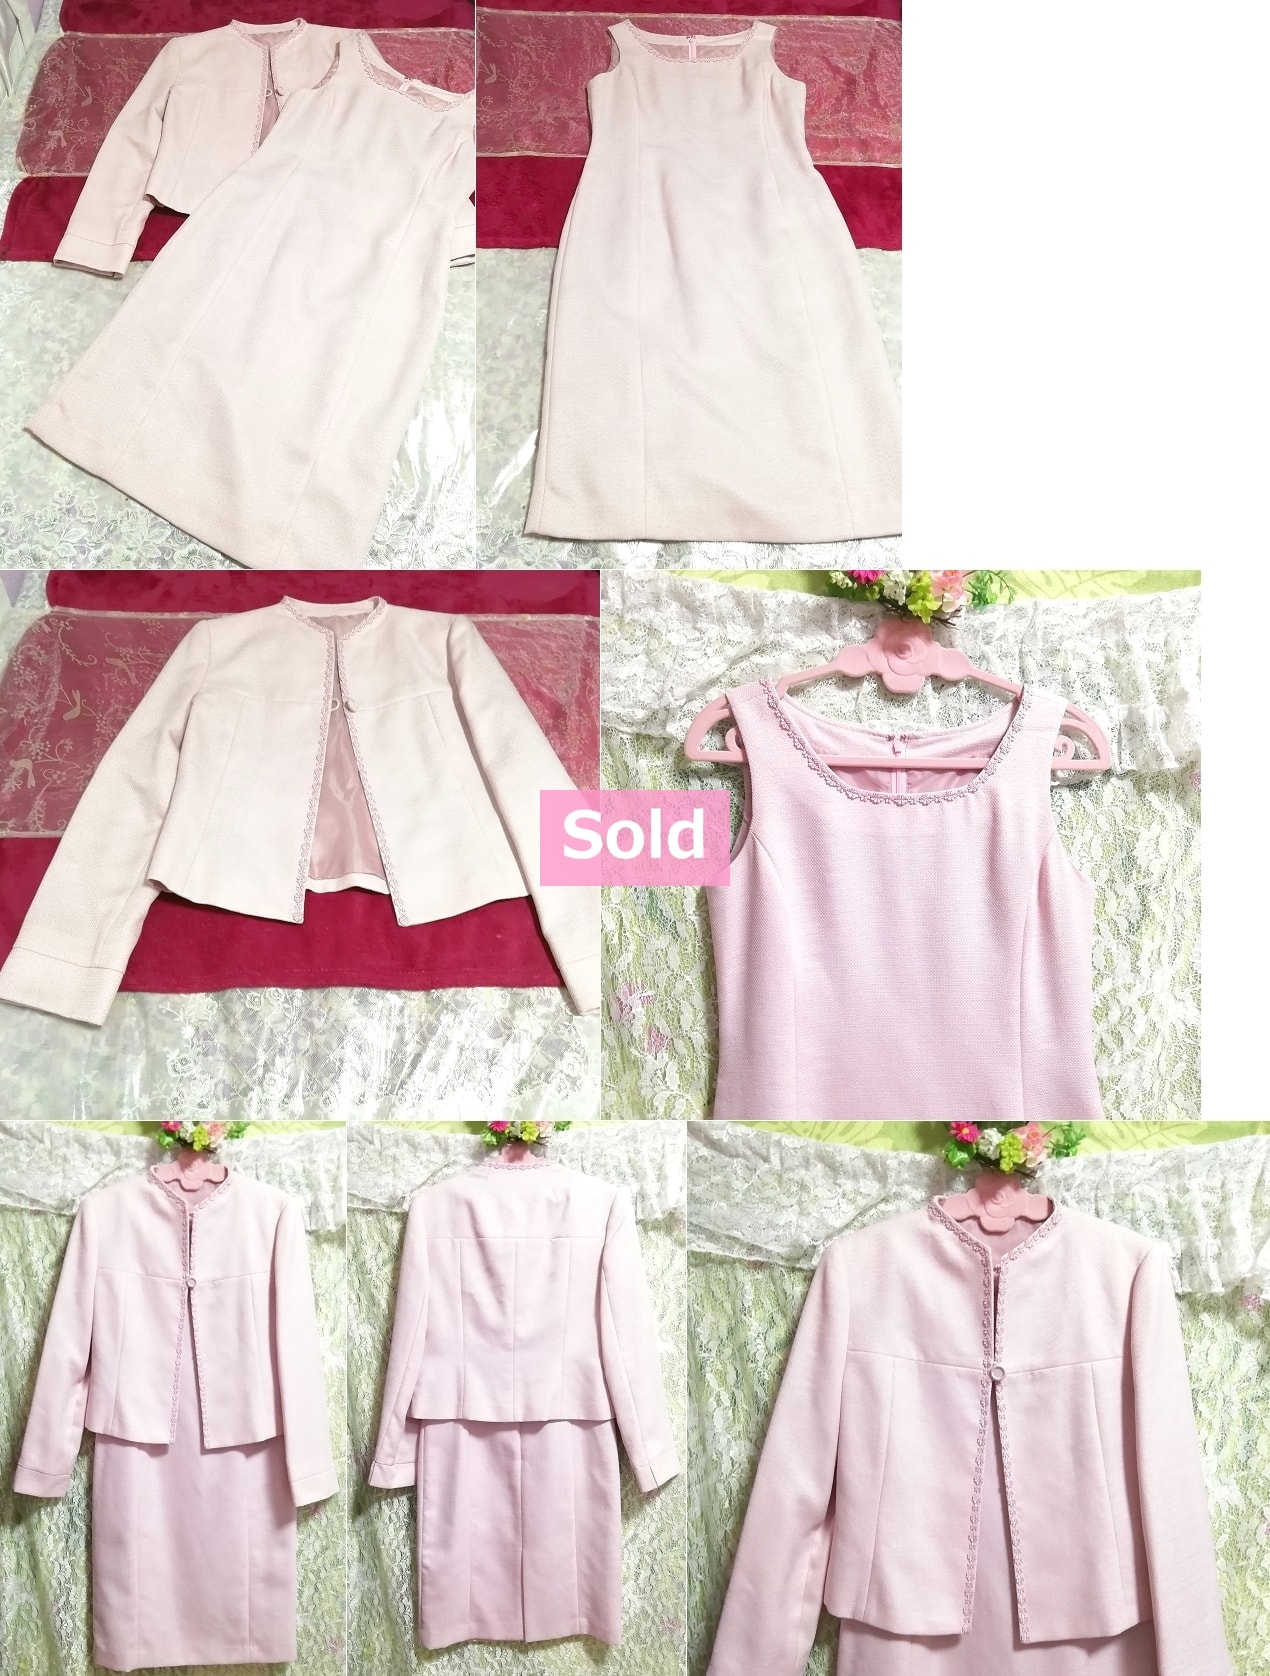 ピンクジャケットノースリーブワンピース2ピーススーツセット Pink jacket sleeveless one piece two piece suit set